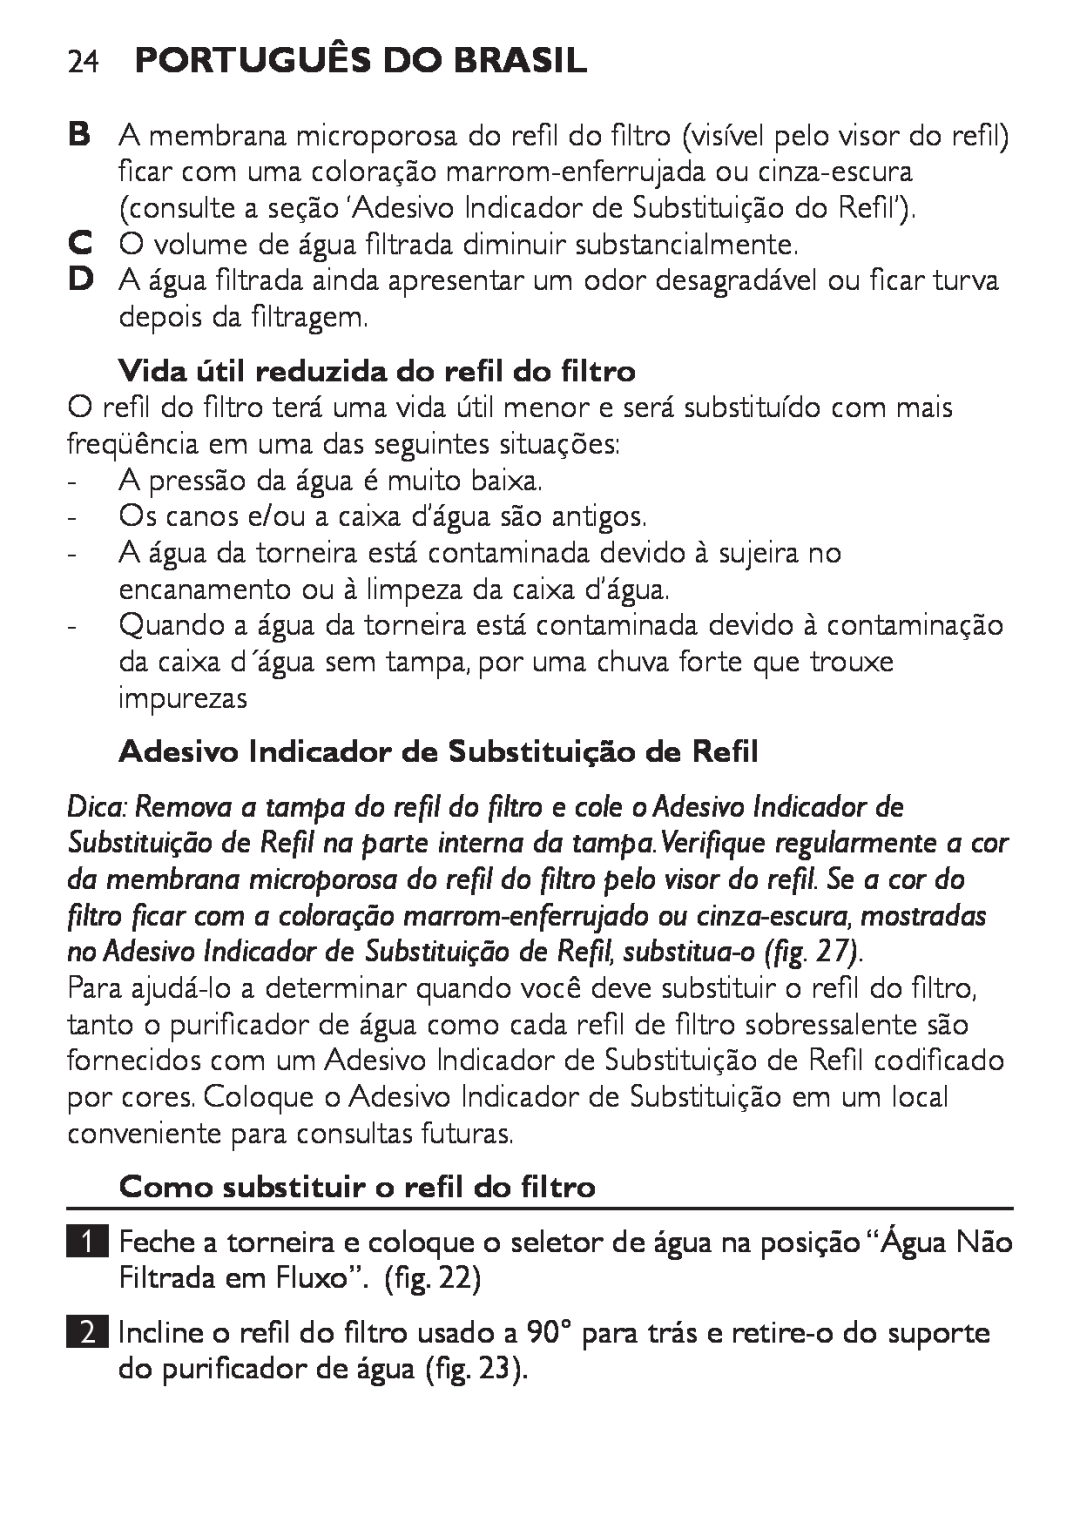 Philips WP3810 Português do Brasil, Vida útil reduzida do refil do filtro, Adesivo Indicador de Substituição de Refil 